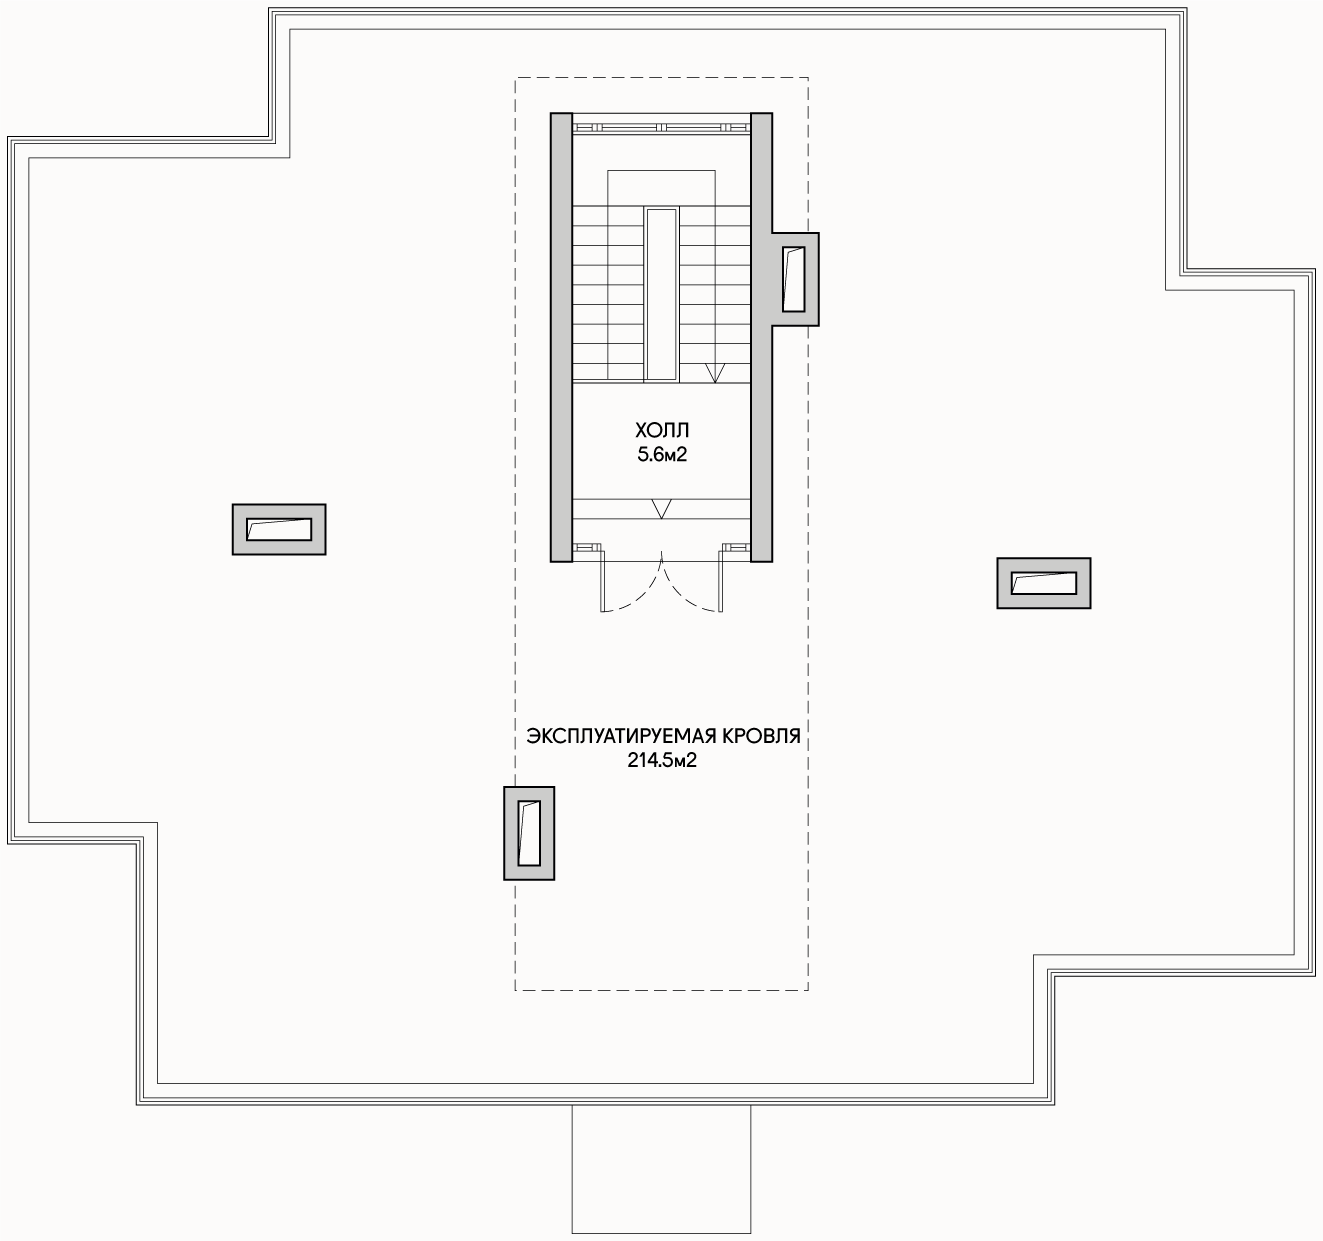 Планирока 3-го этажа в проекте Доходный дом на 8 квартир-студий MK-208